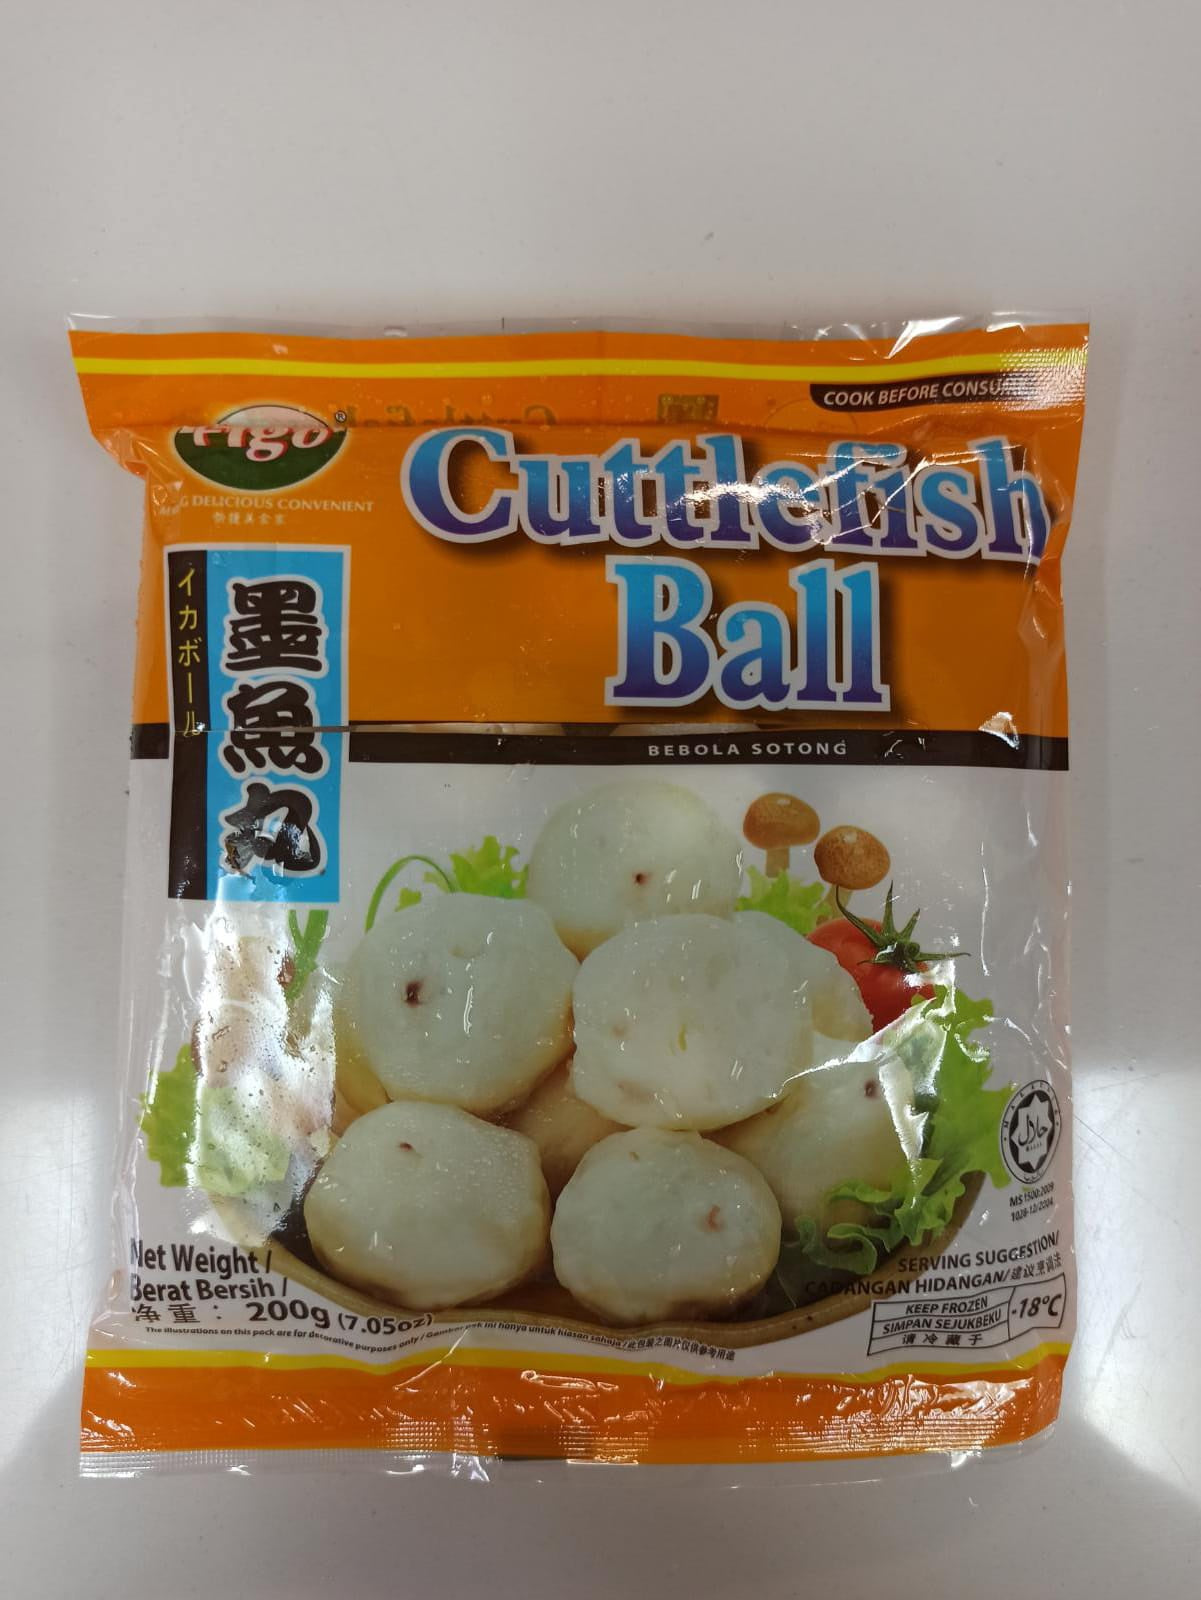 FIGO Cuttlefish Ball 飛哥墨魚丸 Muc Vien Dong Lanh 200g x 1